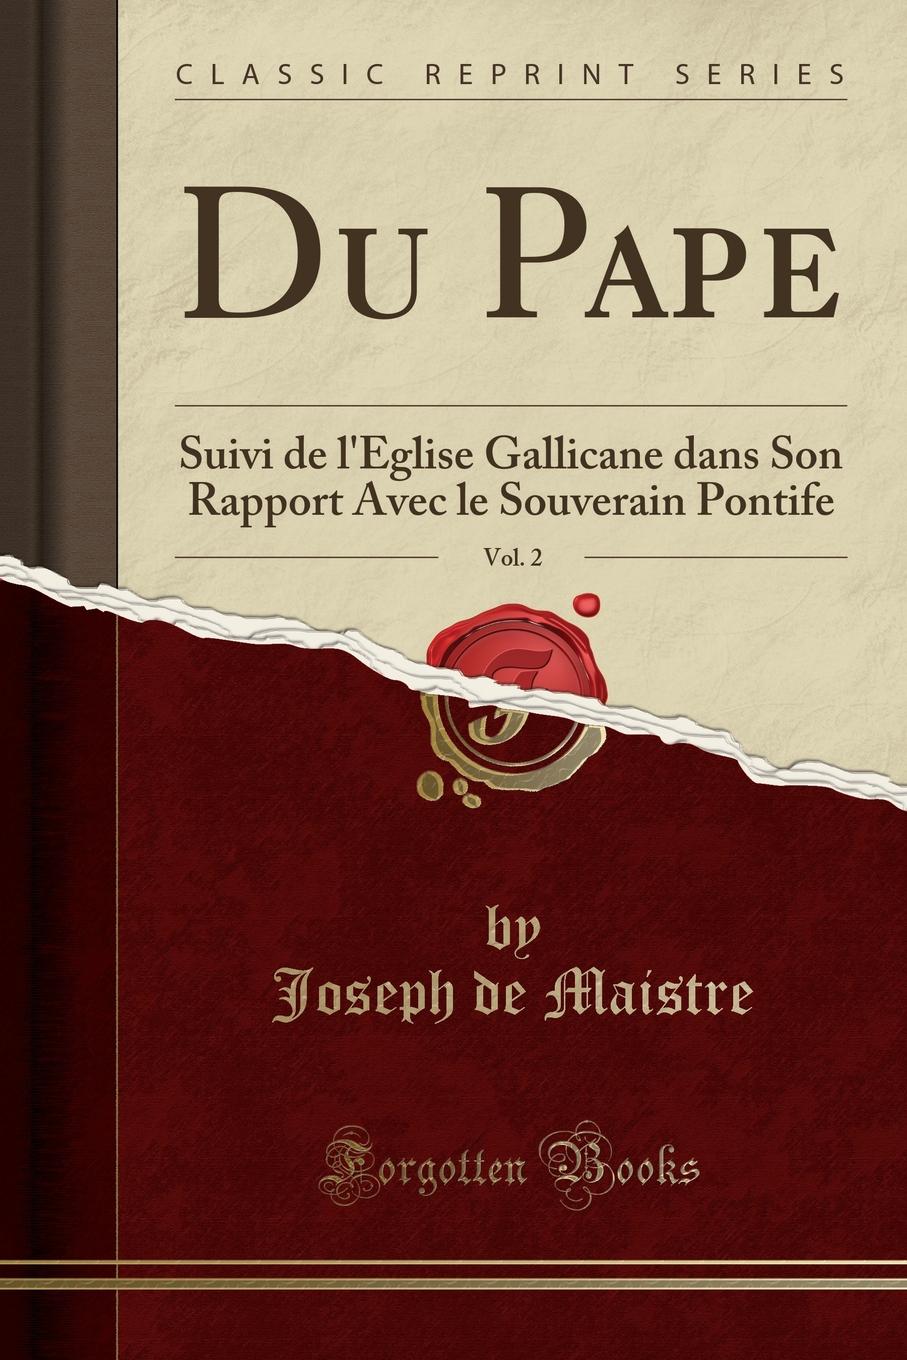 Du Pape, Vol. 2. Suivi de l.Eglise Gallicane dans Son Rapport Avec le Souverain Pontife (Classic Reprint)